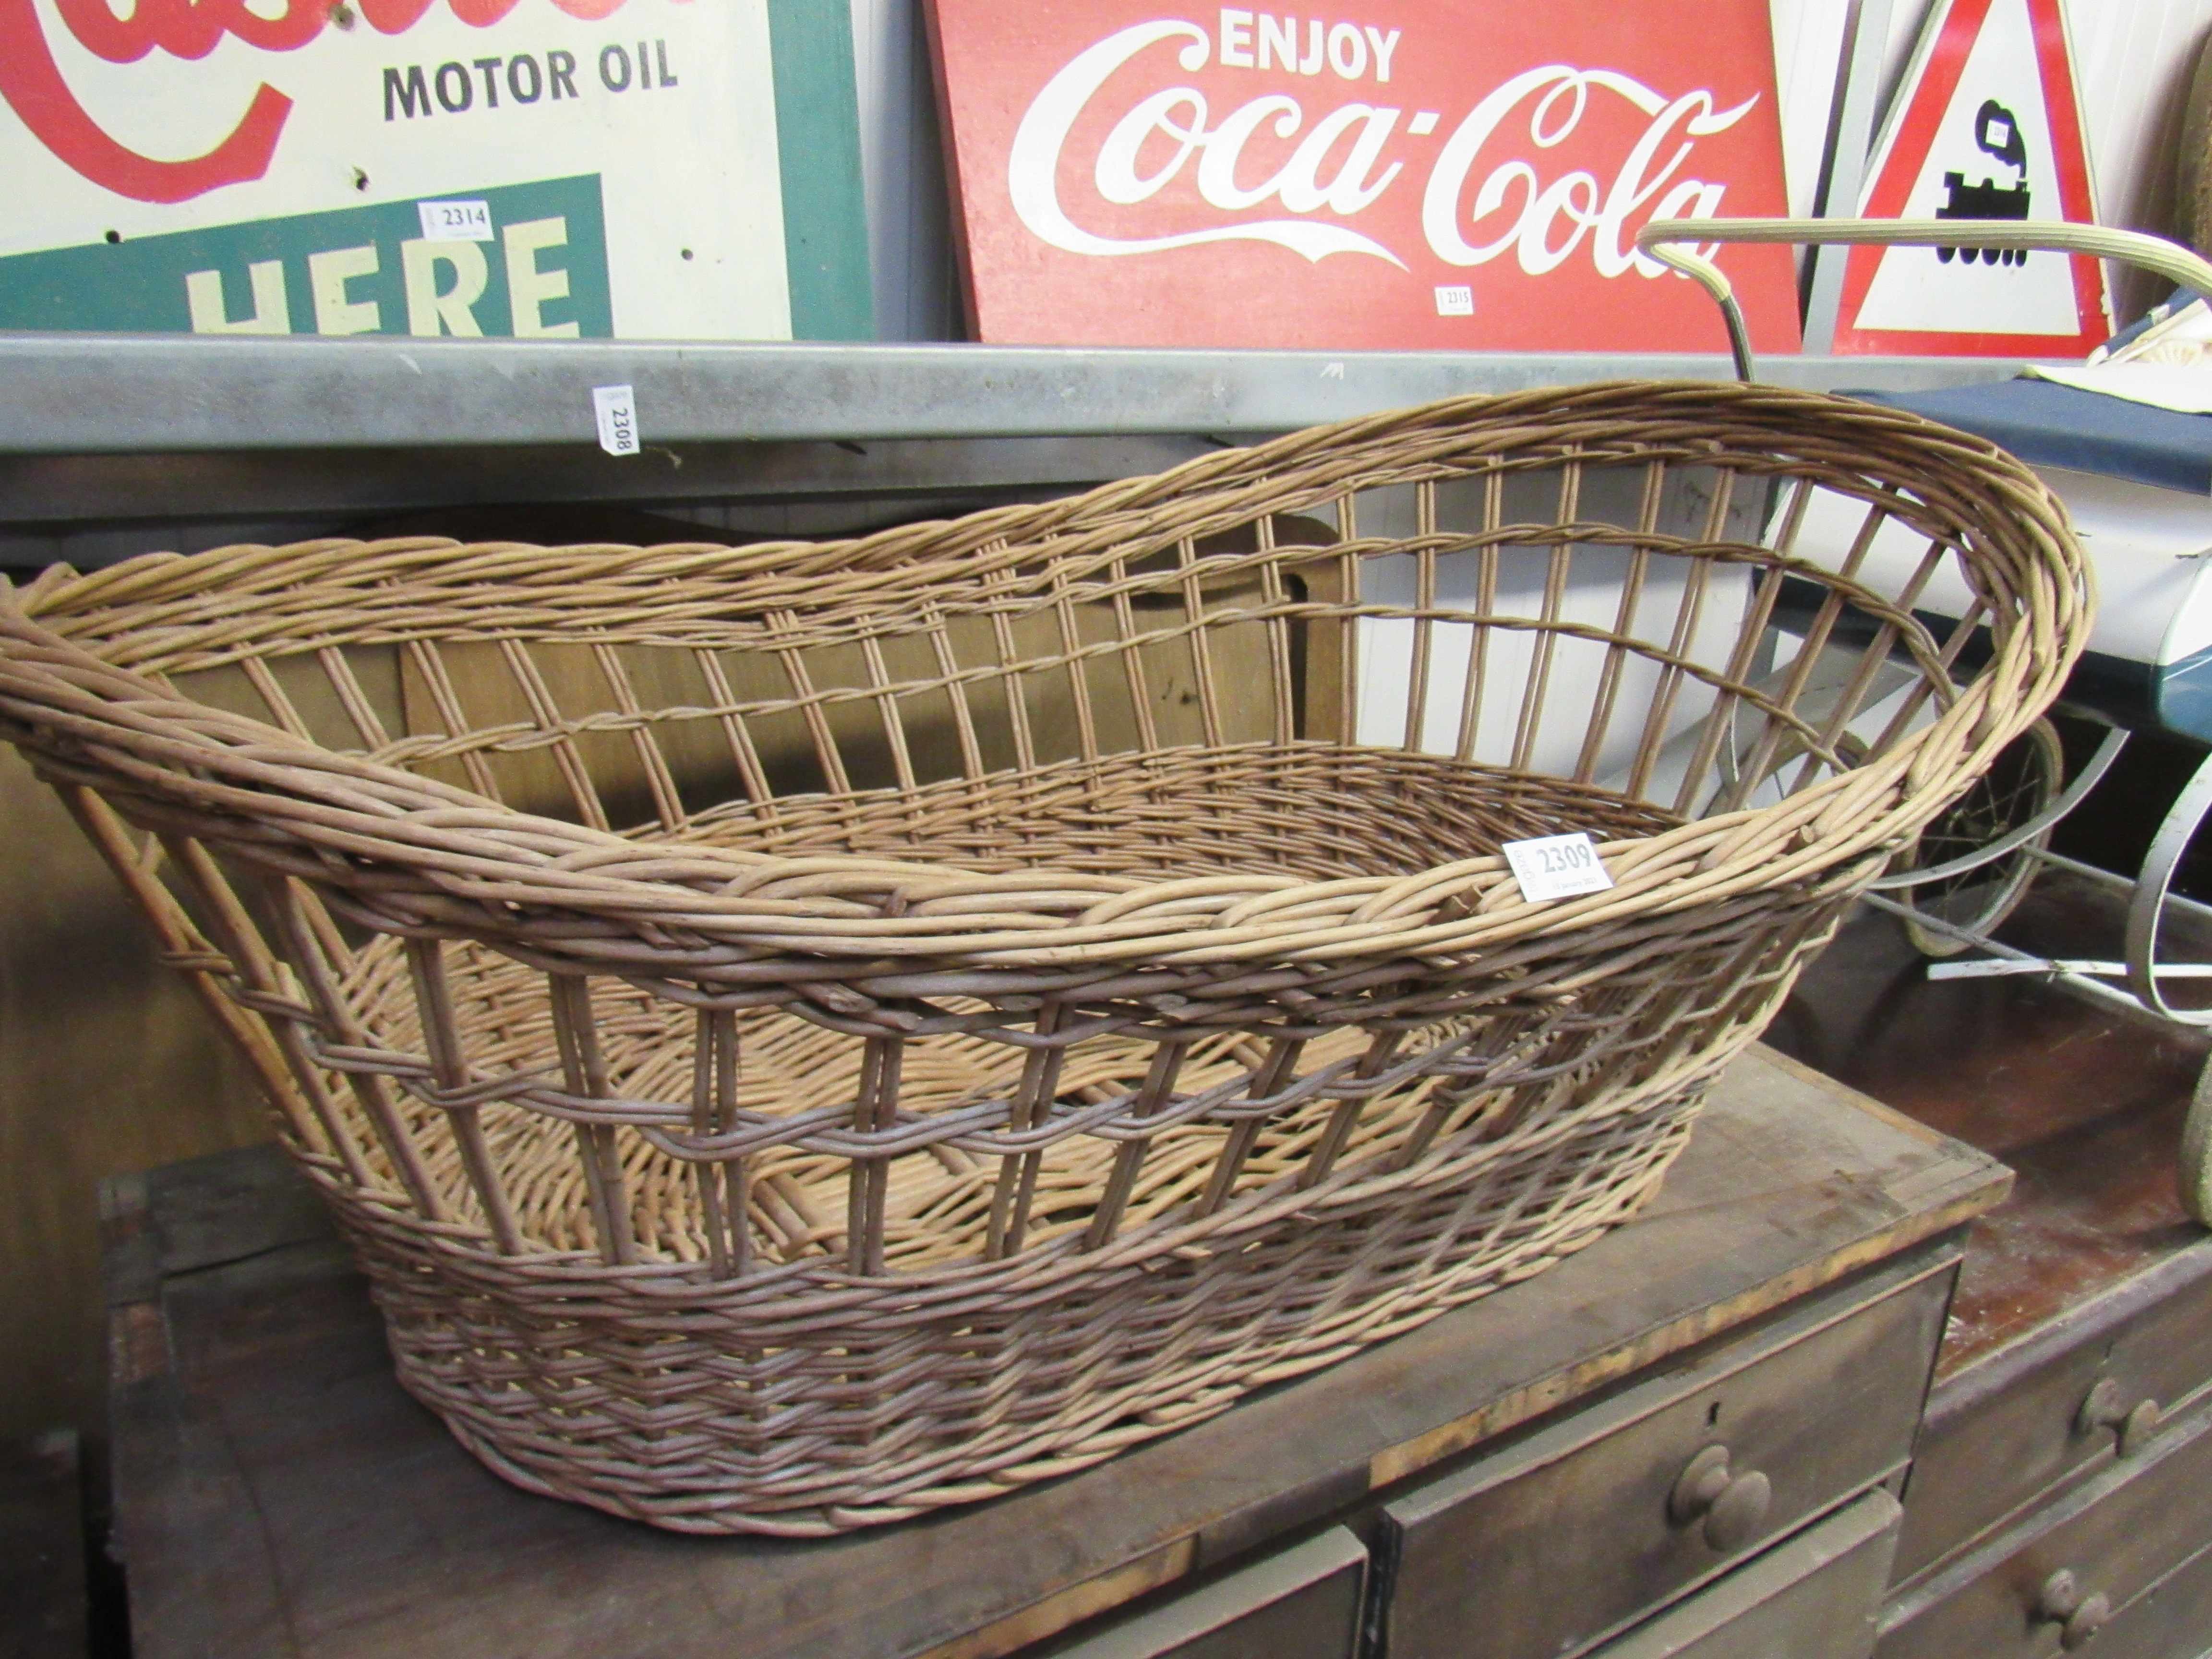 A wicker Mosses basket